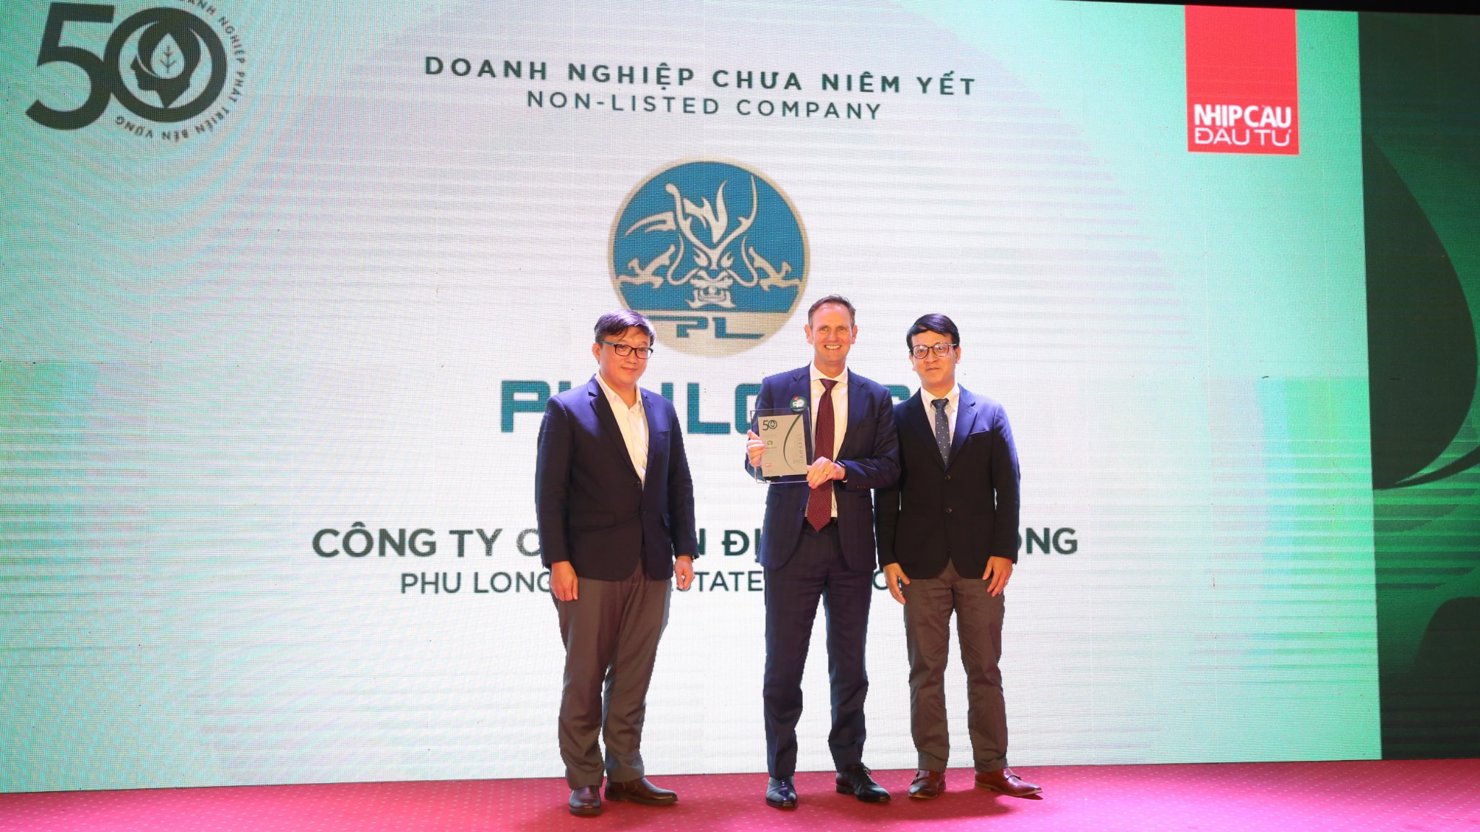 Thay mặt công ty Phú Long, ông Rechard Mark Leech đón nhận giải thưởng tại sự kiện. Ảnh: TH